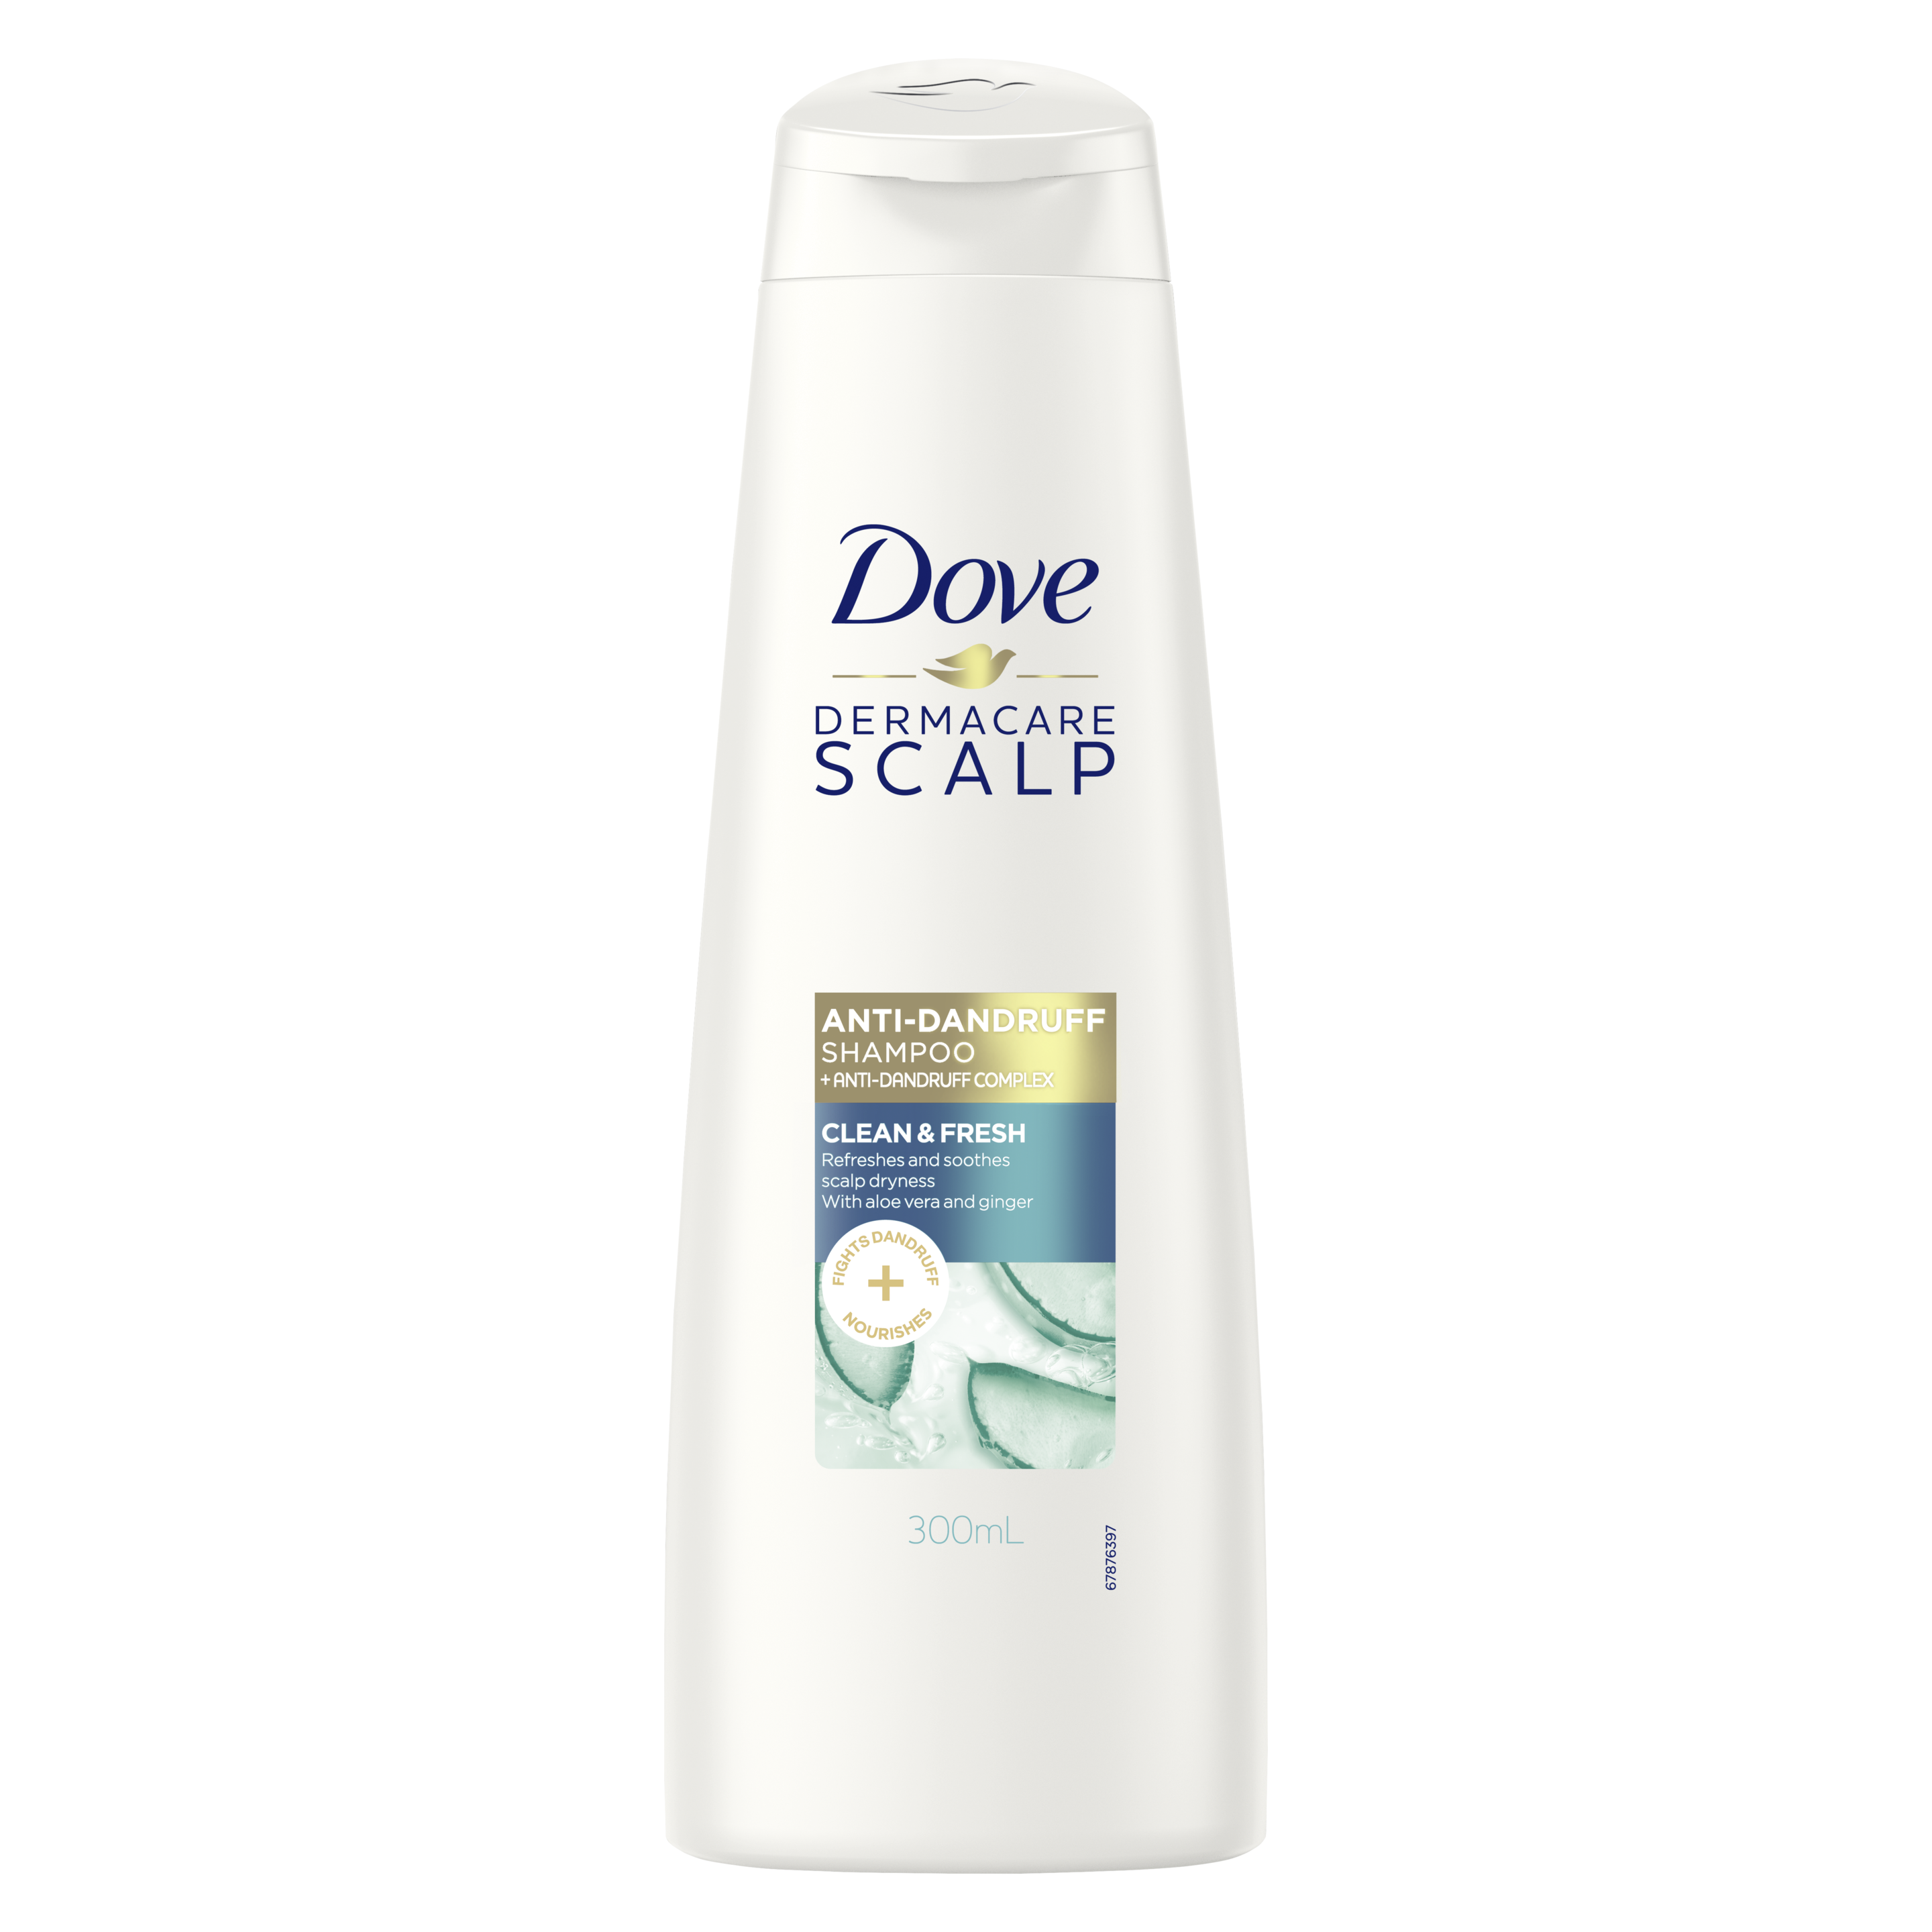 Clean And Fresh Anti Dandruff Shampoo